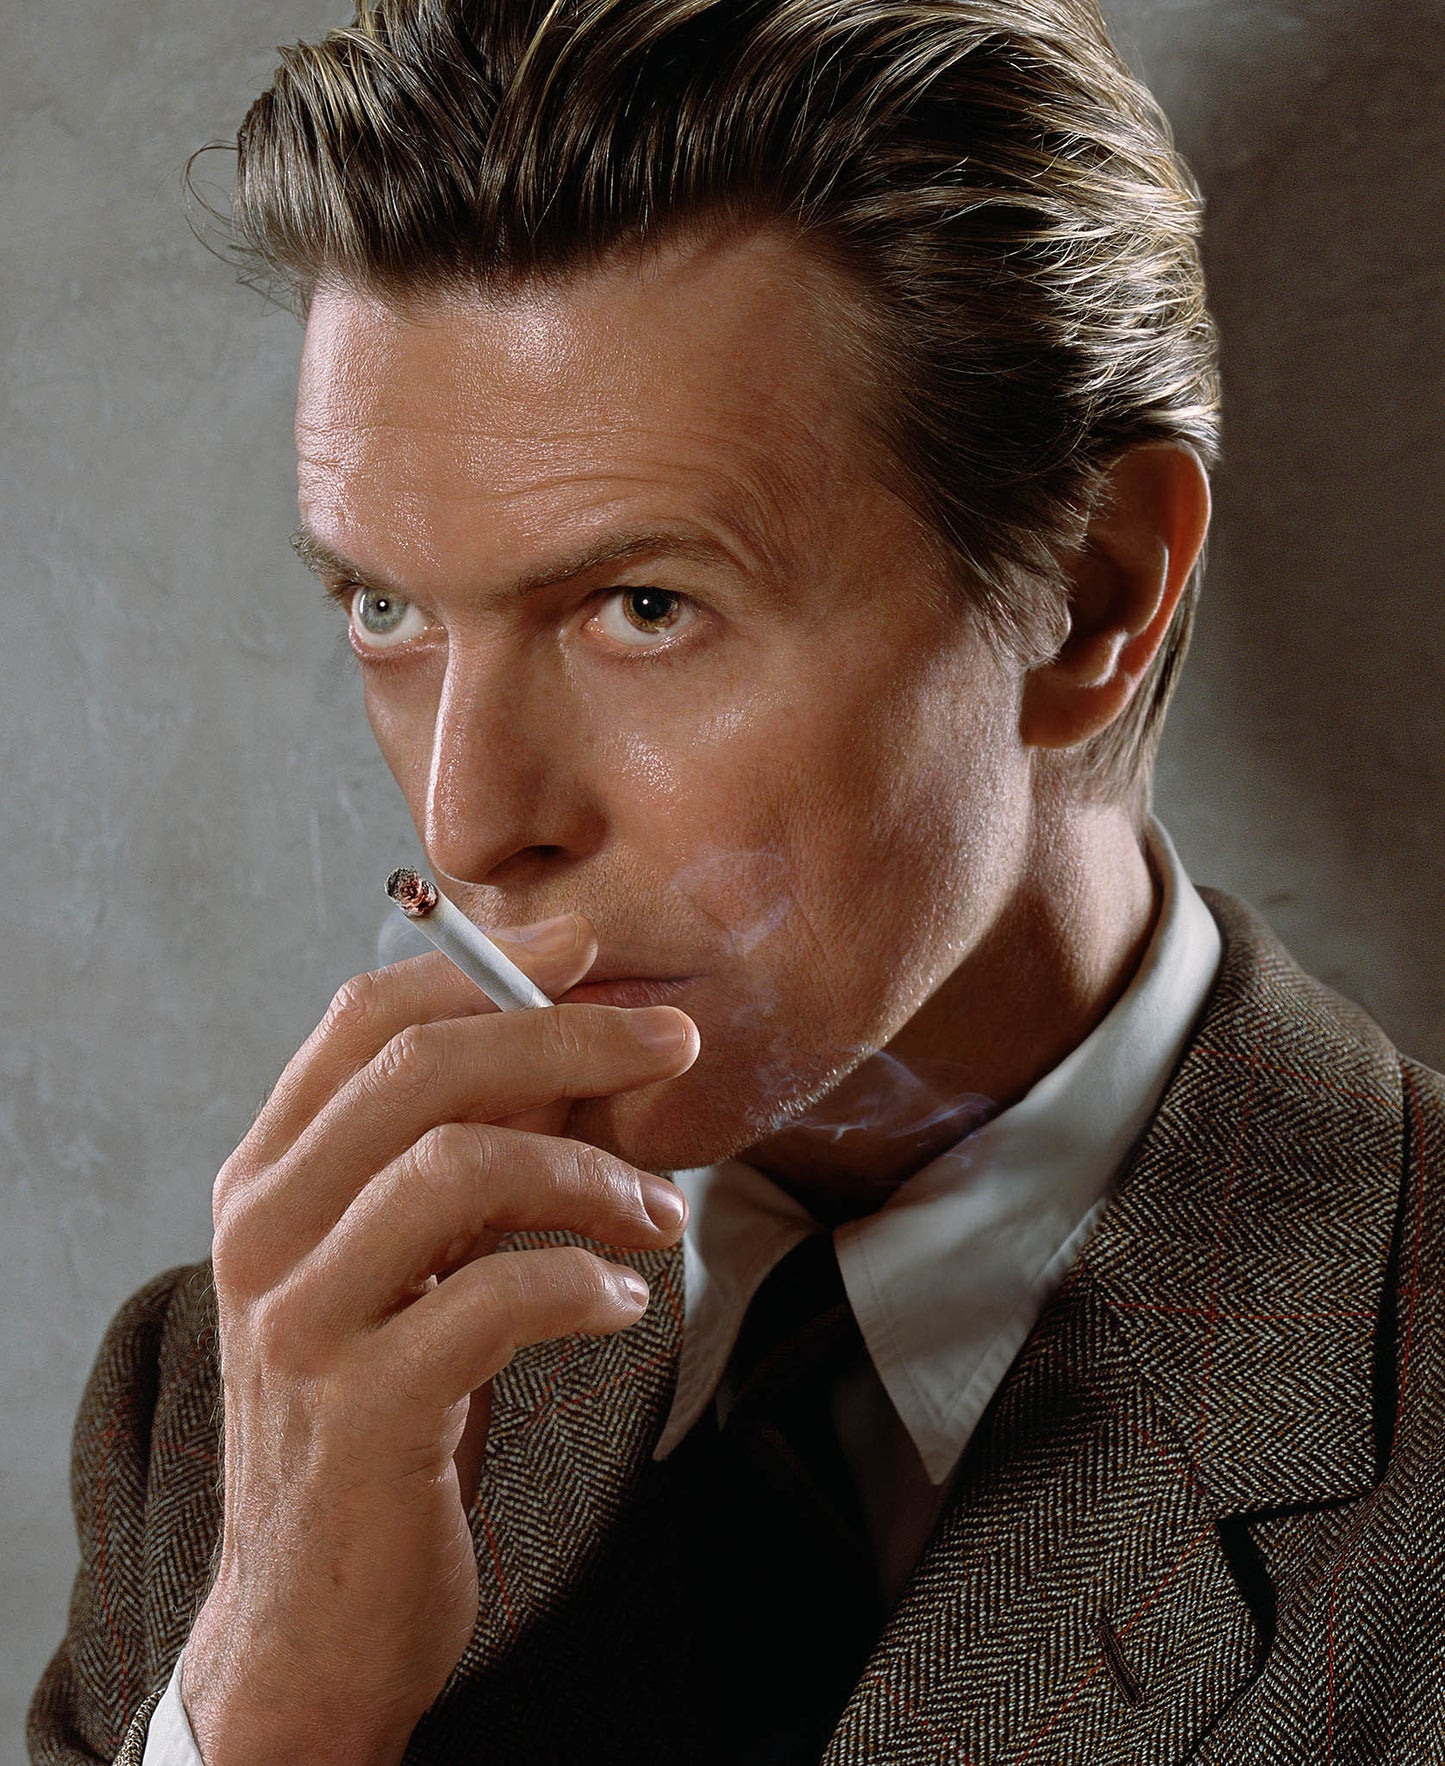 David Bowie, Smoking 2001 by Markus Klinko